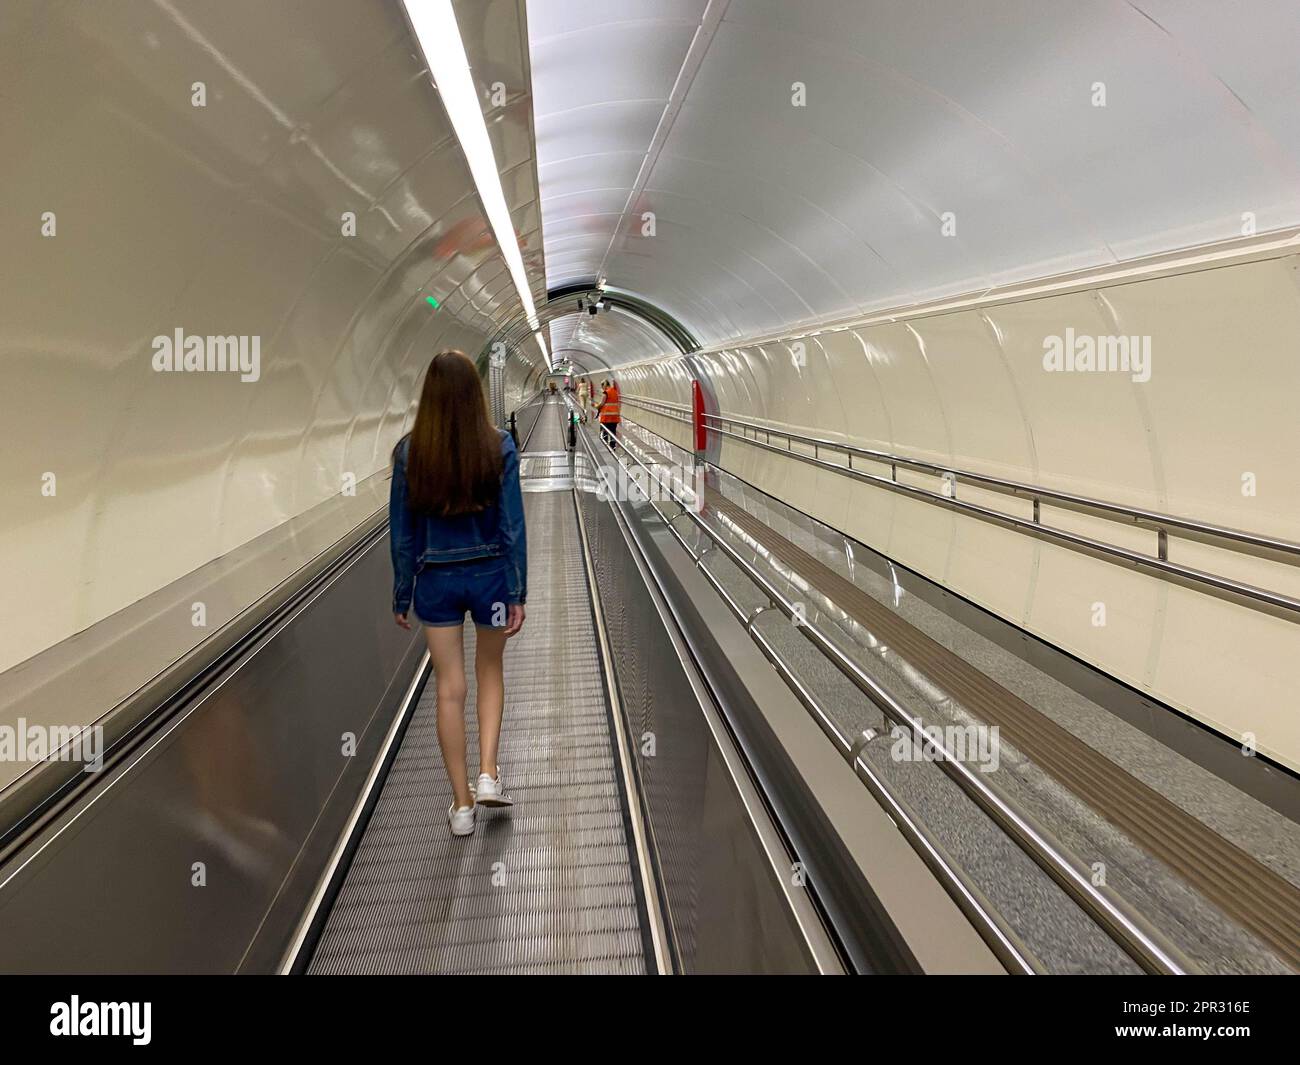 Ein hübsches Mädchen geht am Travolator im U-Bahn-Tunnel entlang, um zu einer anderen U-Bahn-Station zu gehen. Blick von hinten. Stockfoto